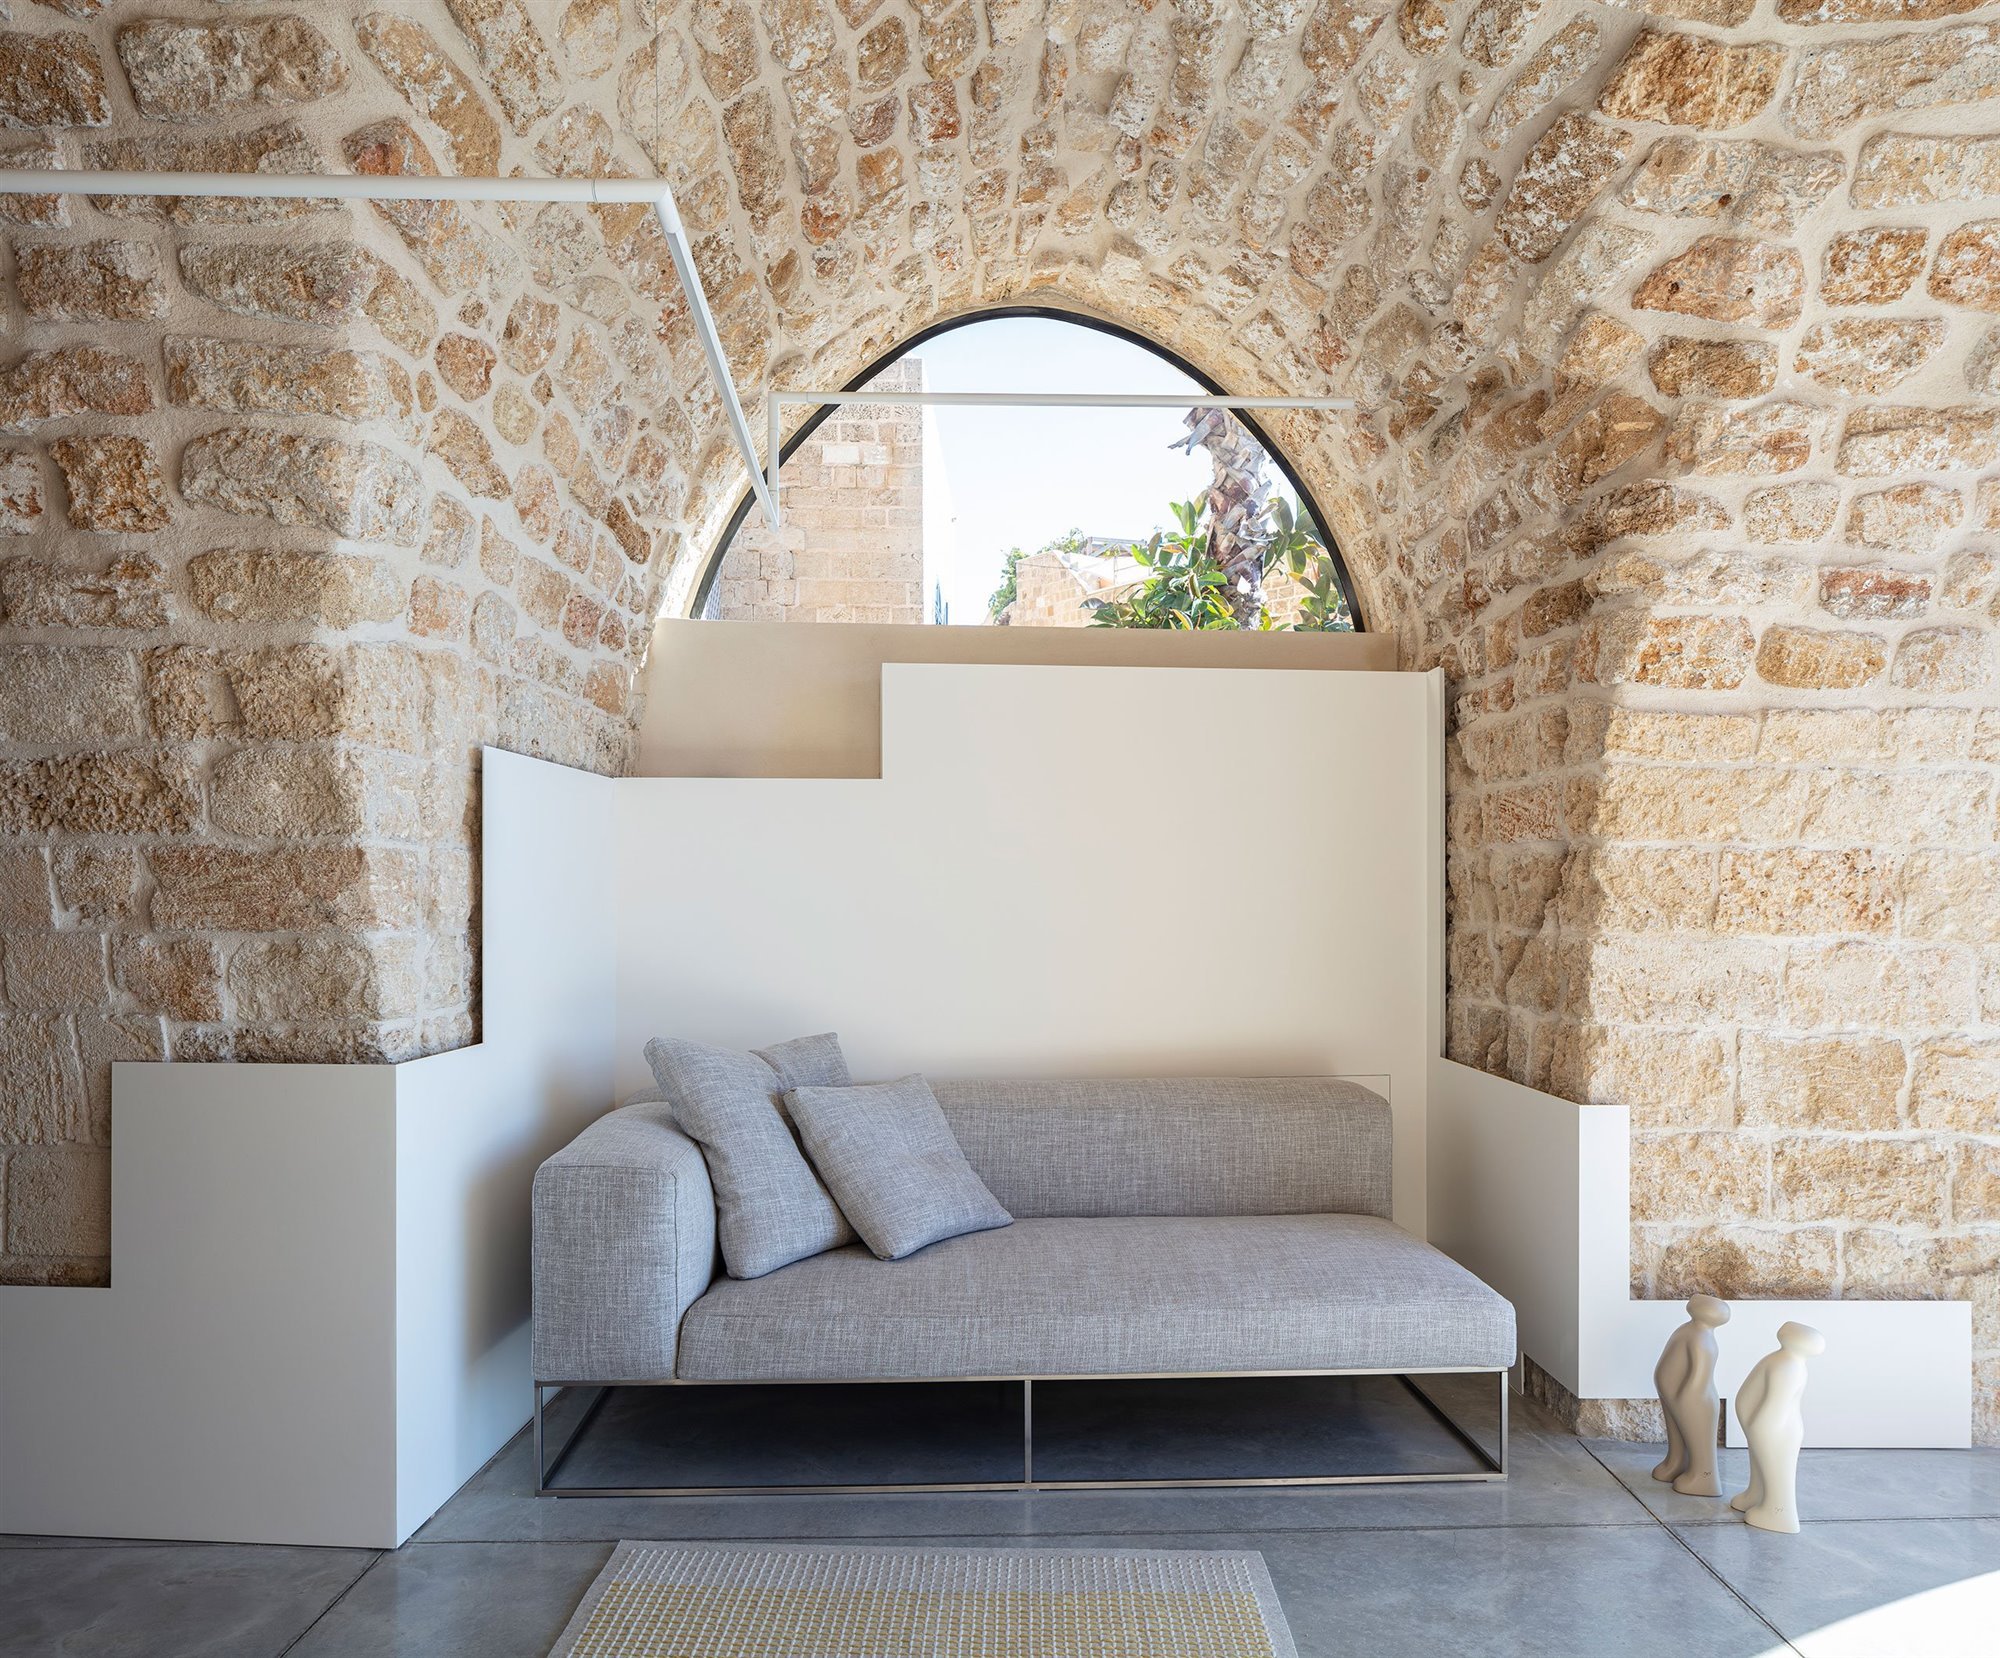 Casa moderna de piedra y ladrillo reformada en Tel Aviv por el arquitecto Pitsou Kedem rincon de lectura